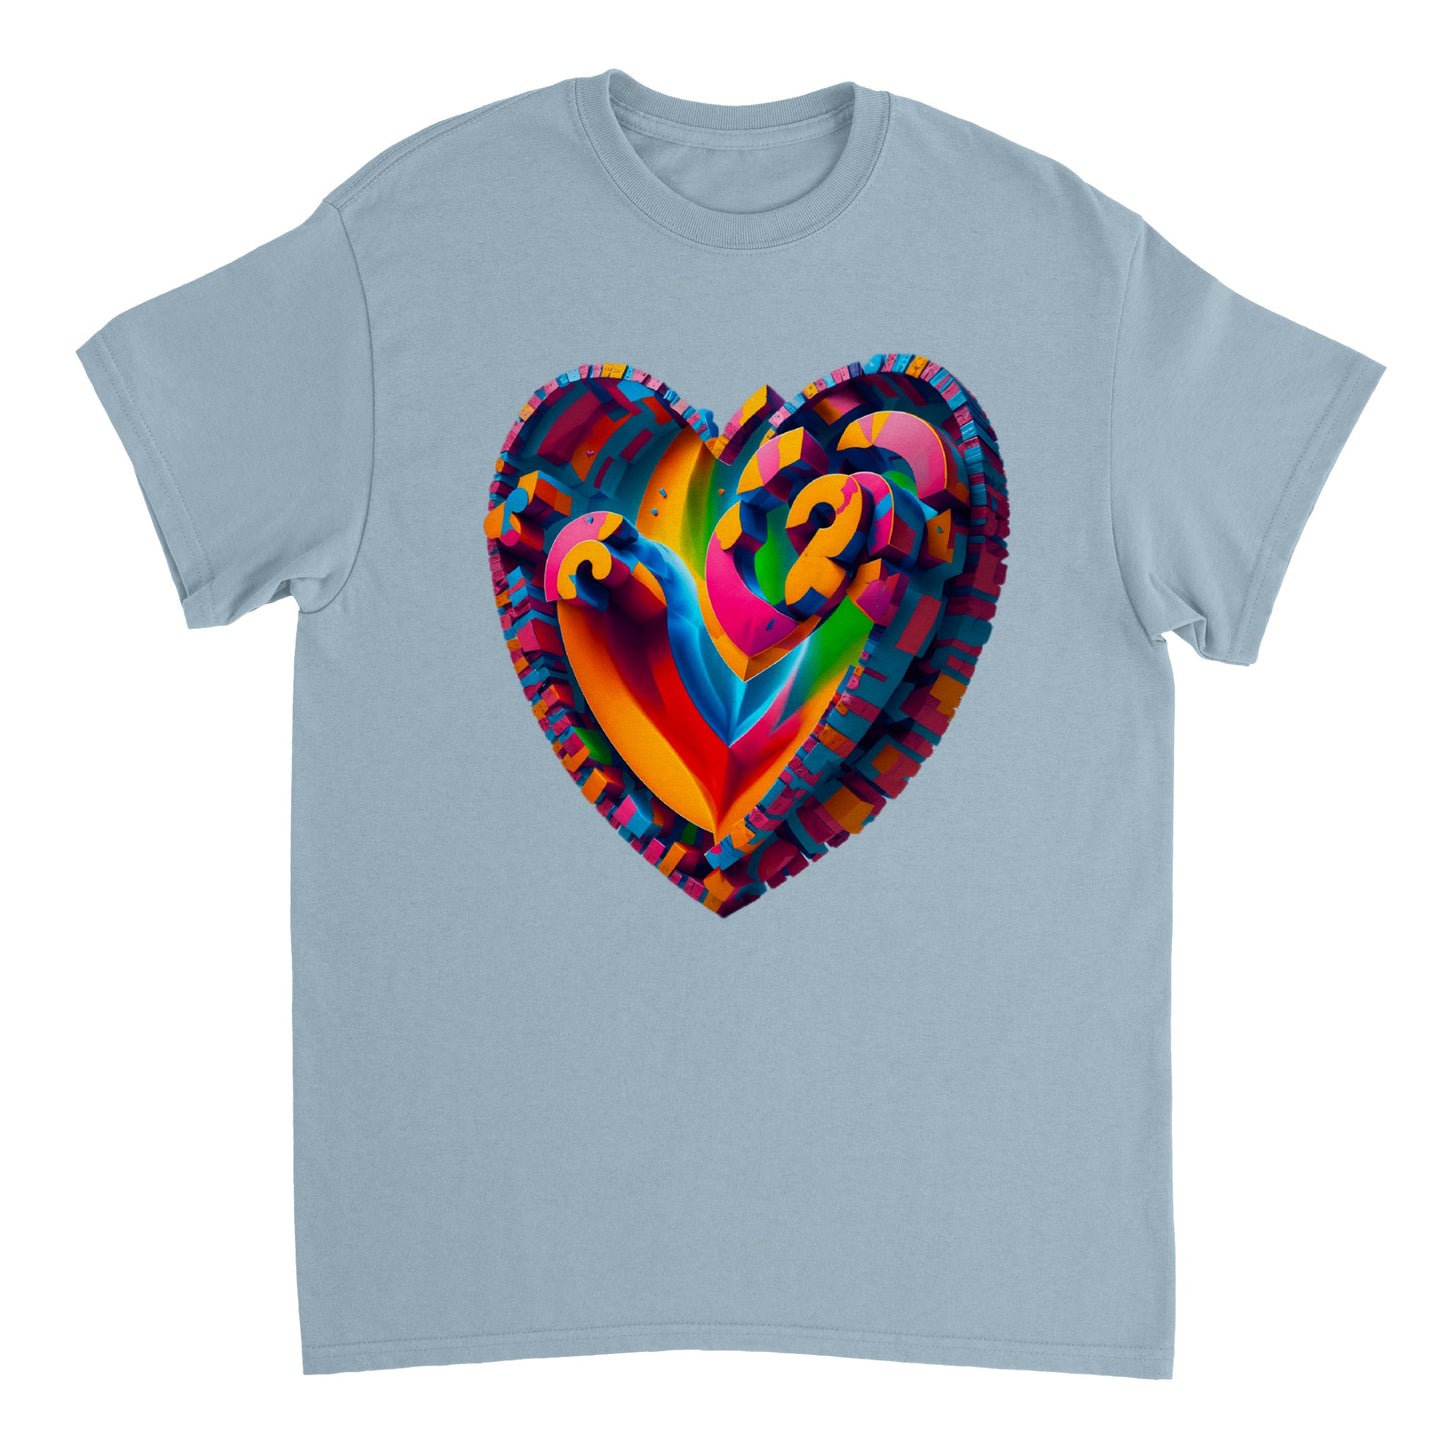 Love Heart - Heavyweight Unisex Crewneck T-shirt 28